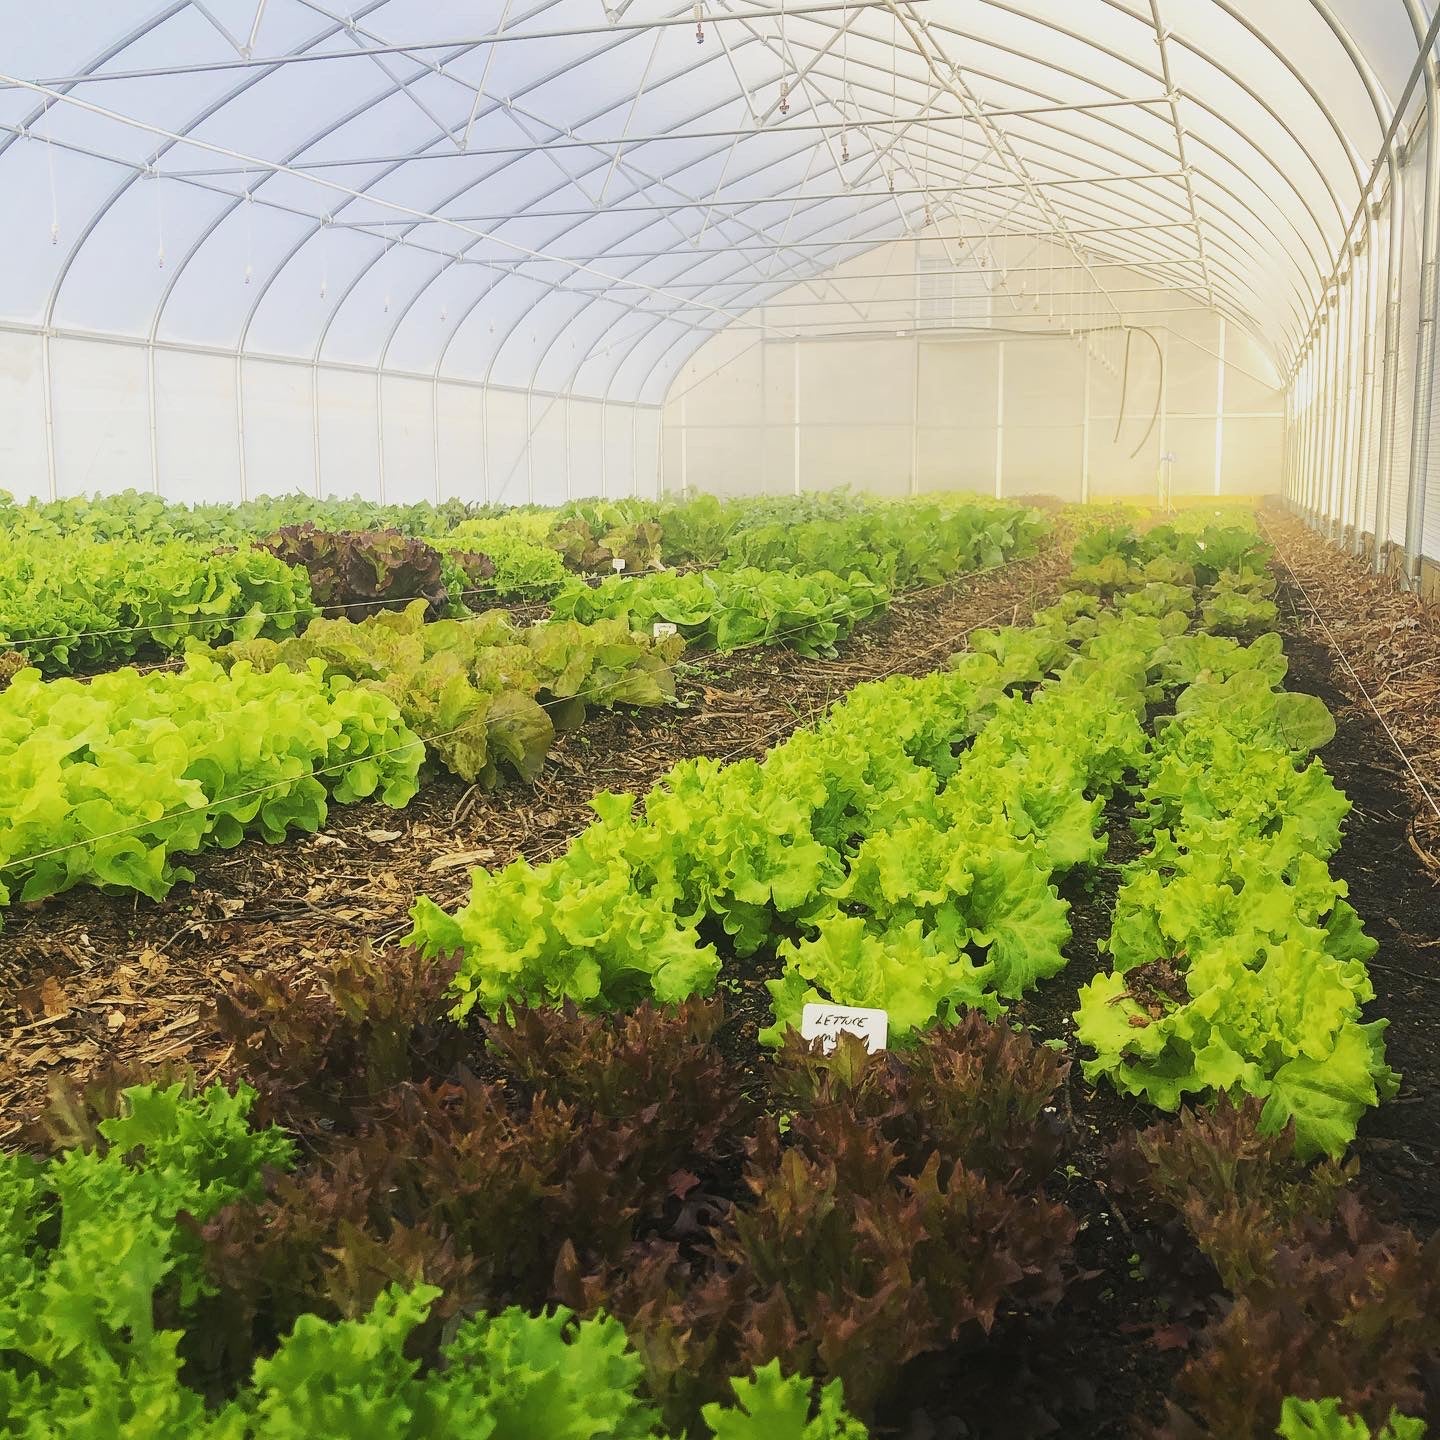 Misty greenhouse full of lettuce